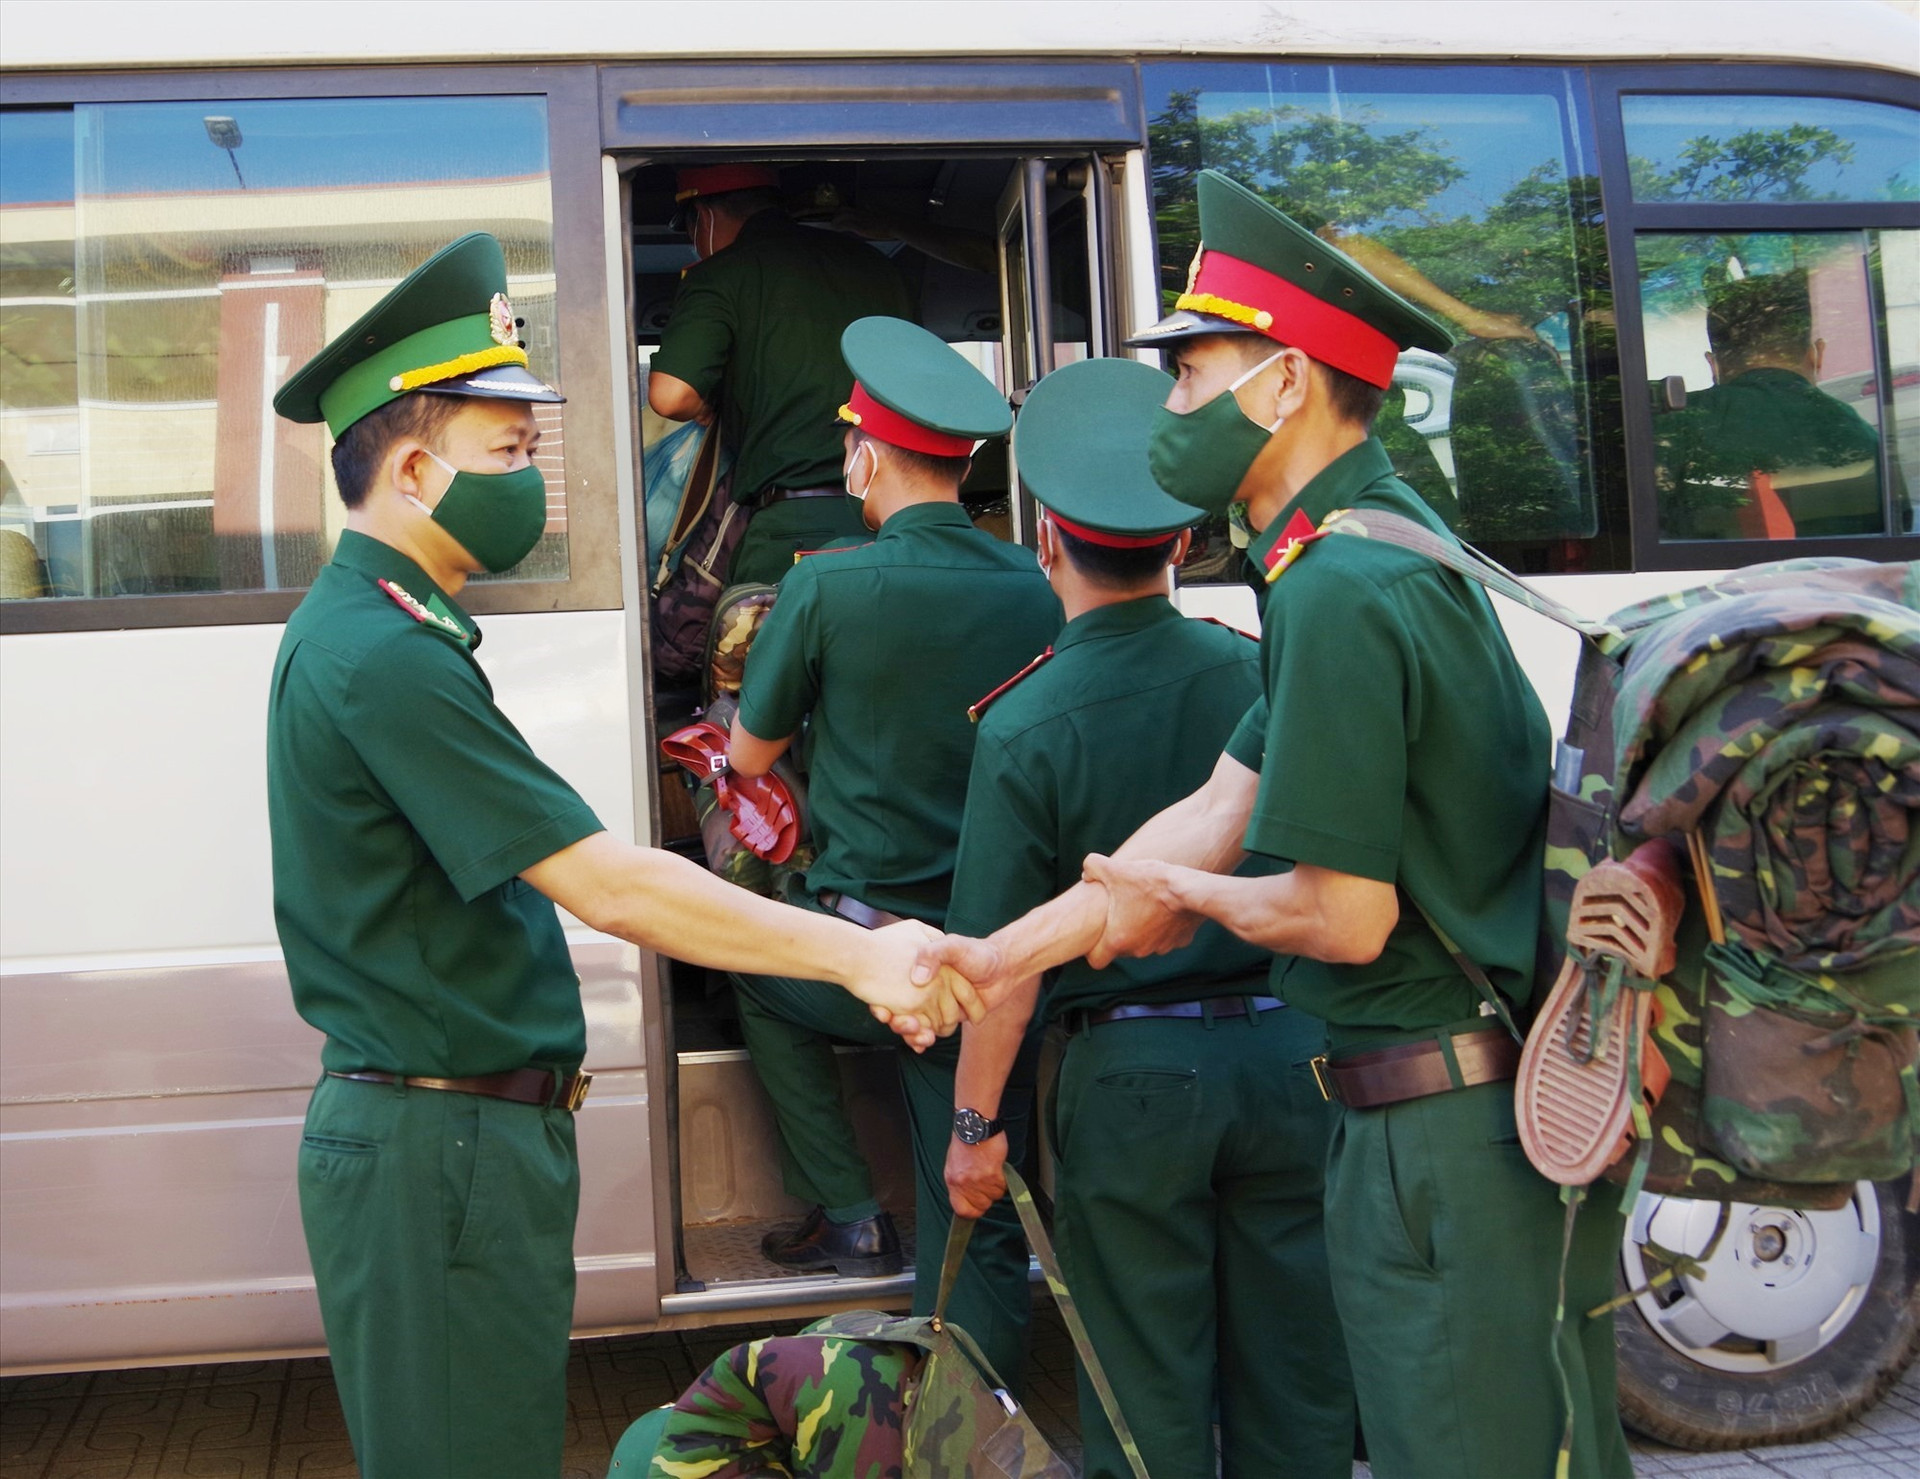 Đại tá Trần Tiến Hiền - Phó chỉ huy trưởng BĐBP tỉnh tiễn đưa lực lượng làm nhiệm vụ lên xe,. Ảnh: HỒNG ANH